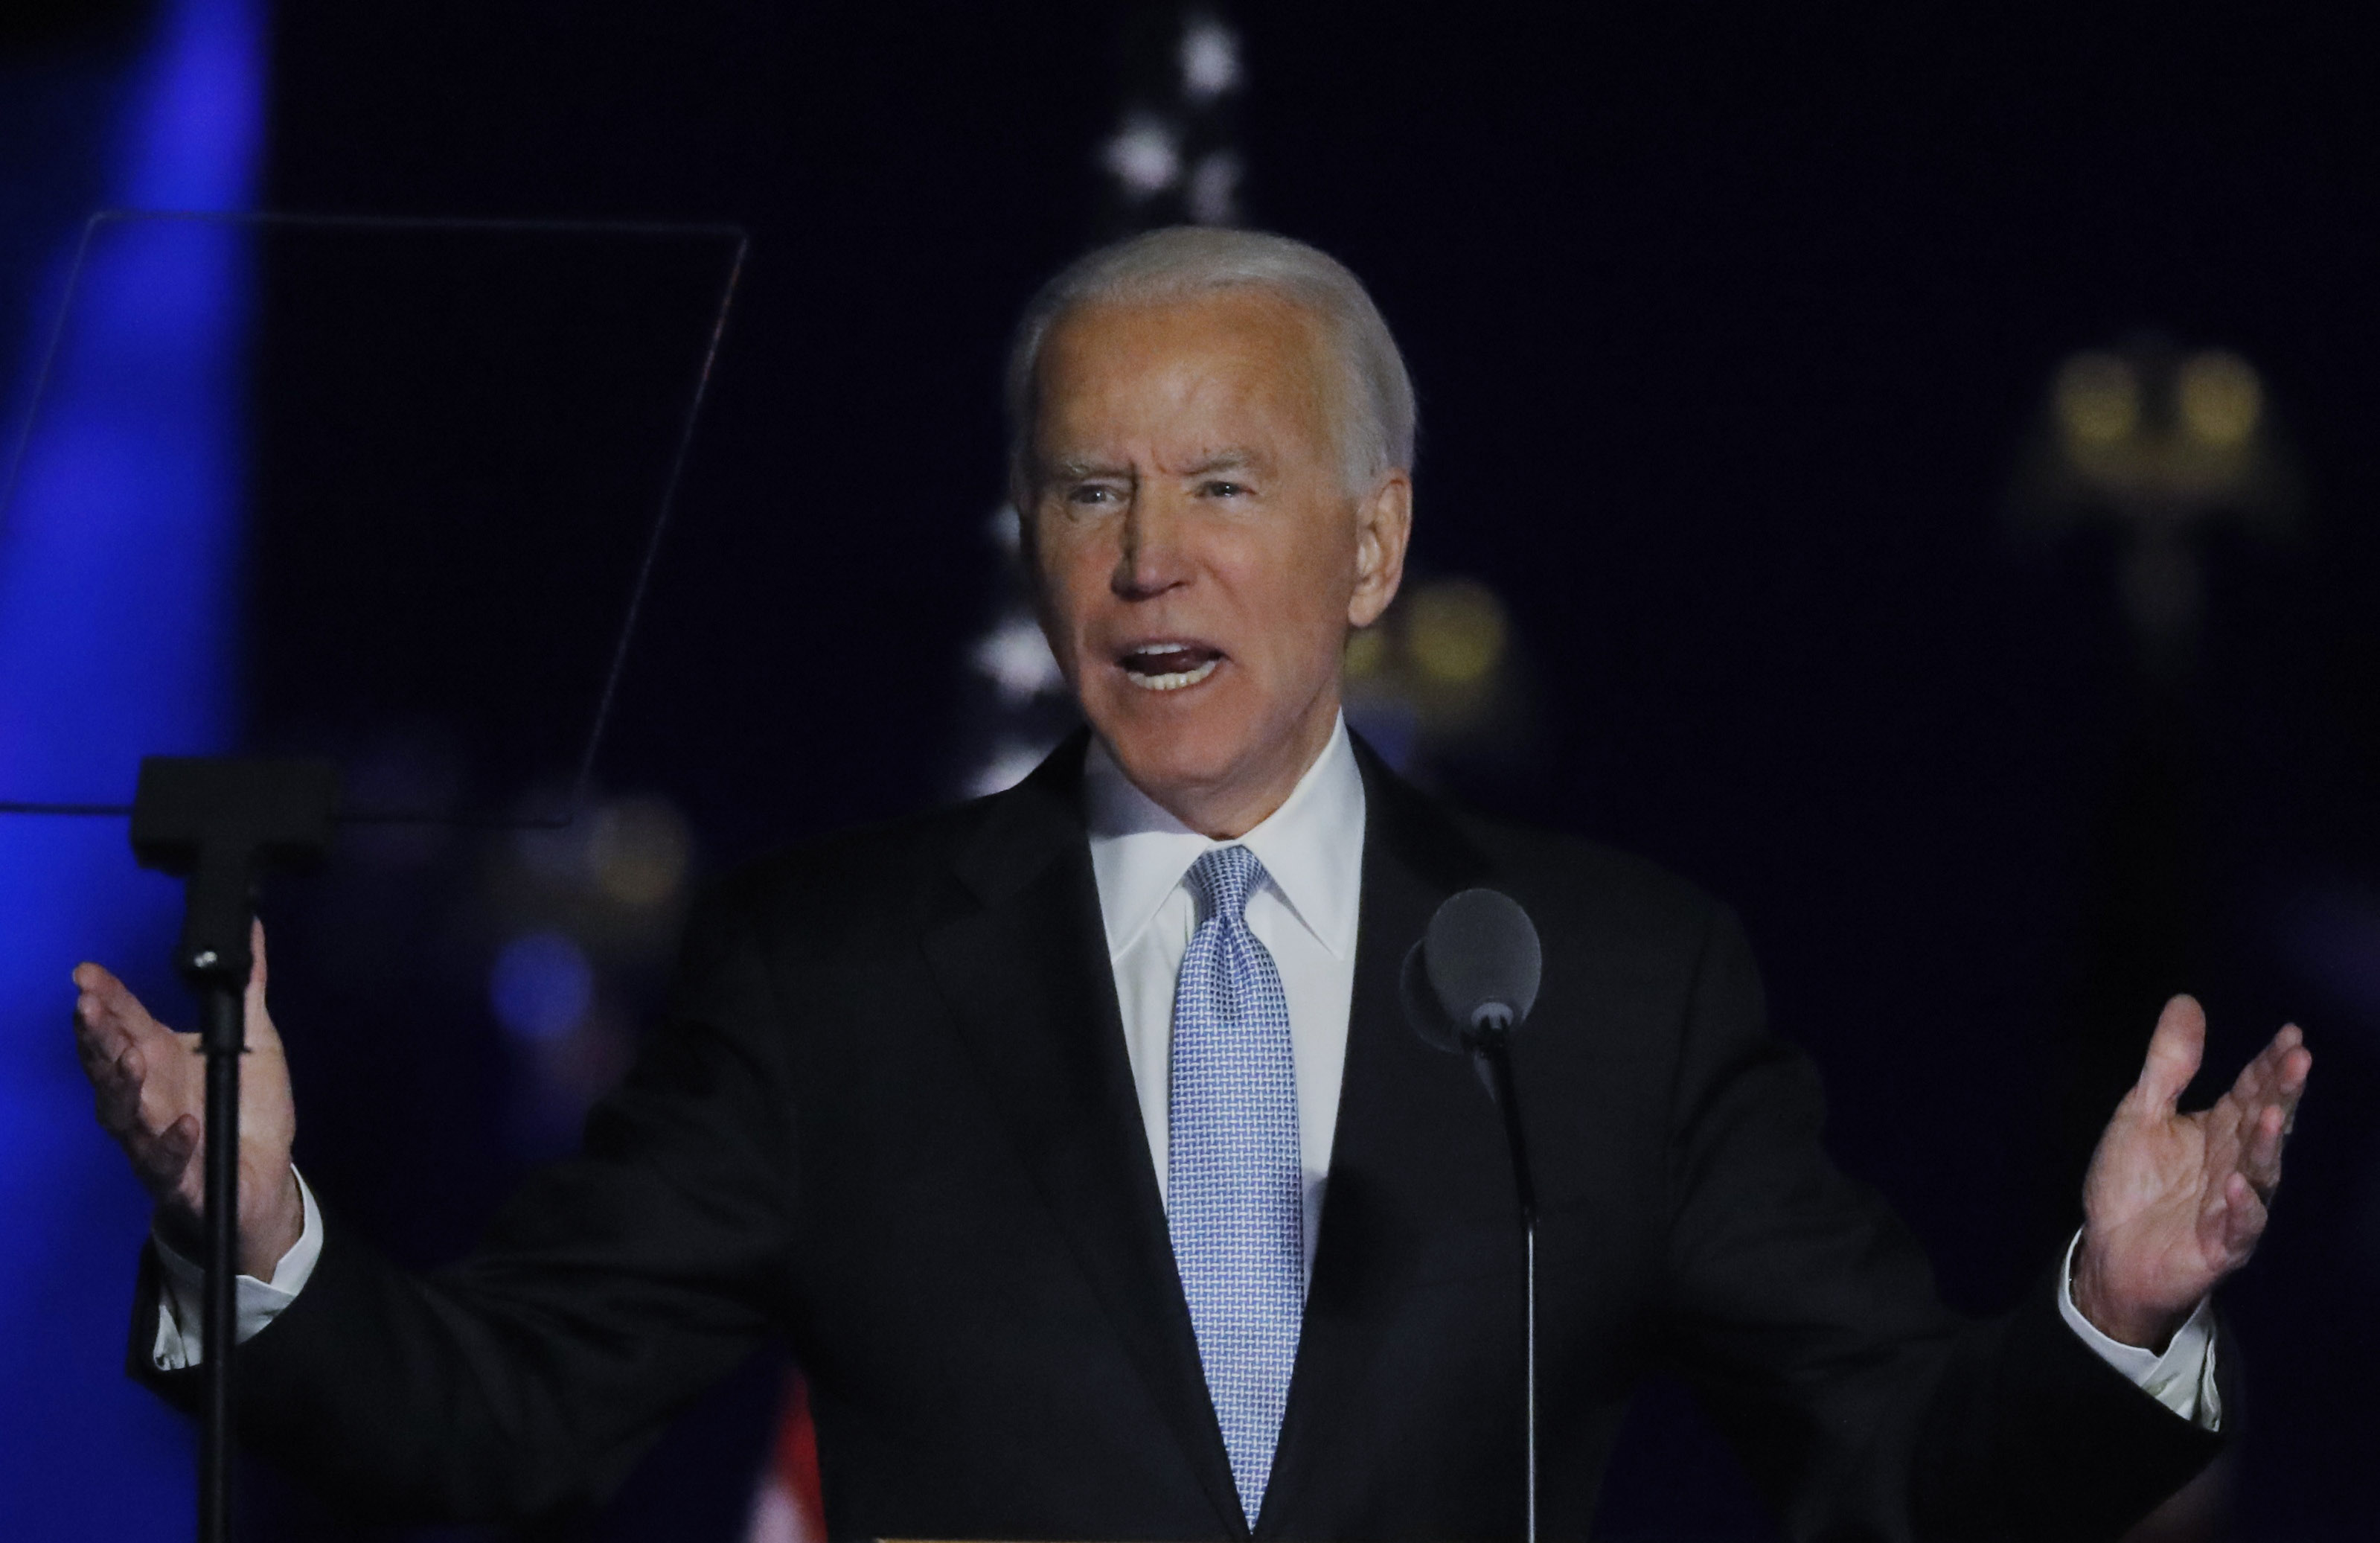 El candidato demócrata Joe Biden y su compañera Kamala Harris ocuparán los cargos de presidente y vicepresidenta de Estados Unidos, respectivamente (Foto: REUTERS/Jim Bourg)